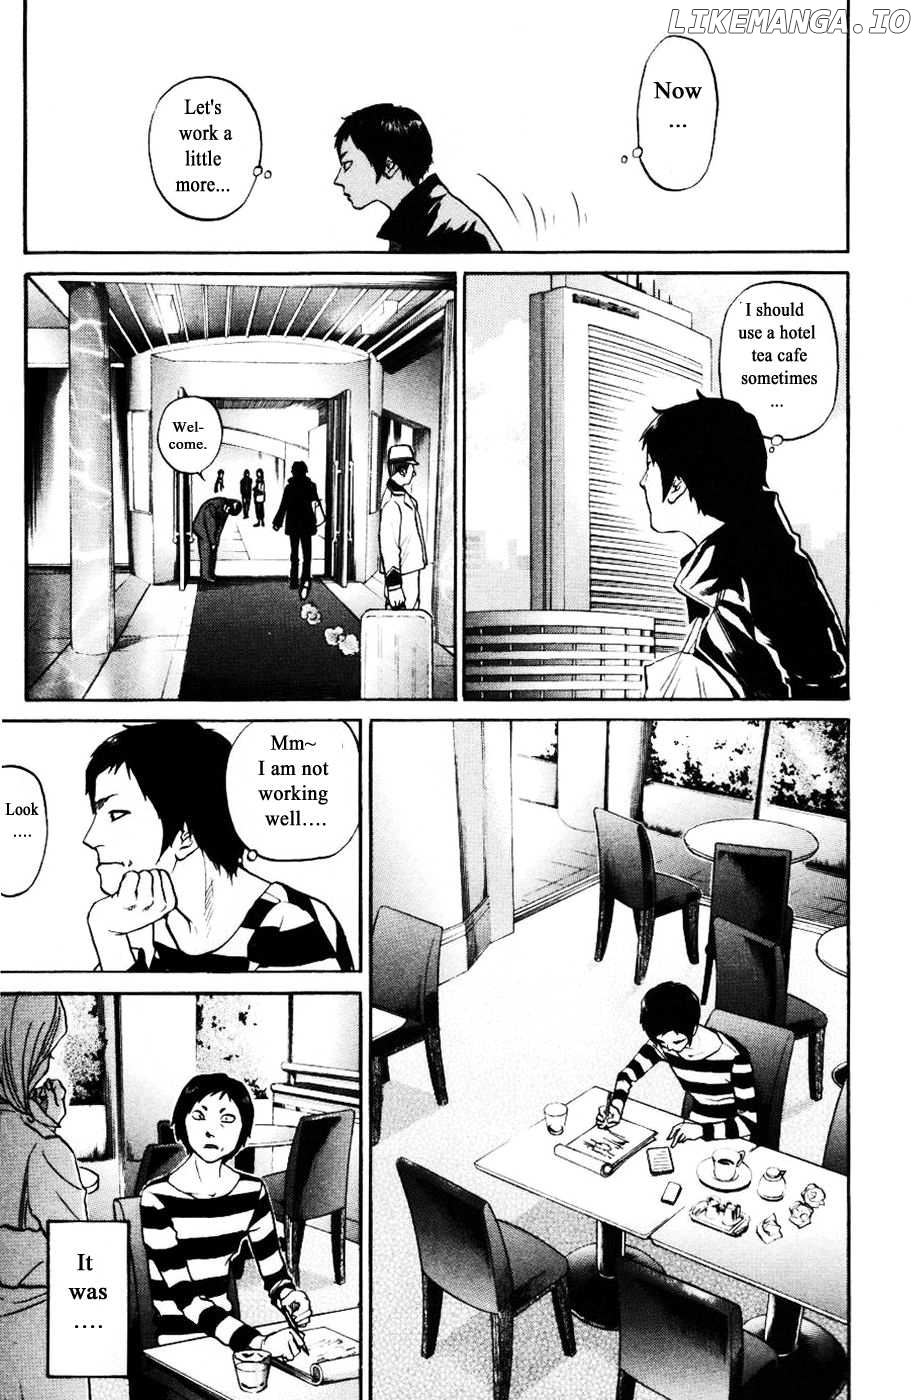 Haruka 17 Chapter 126 - page 11